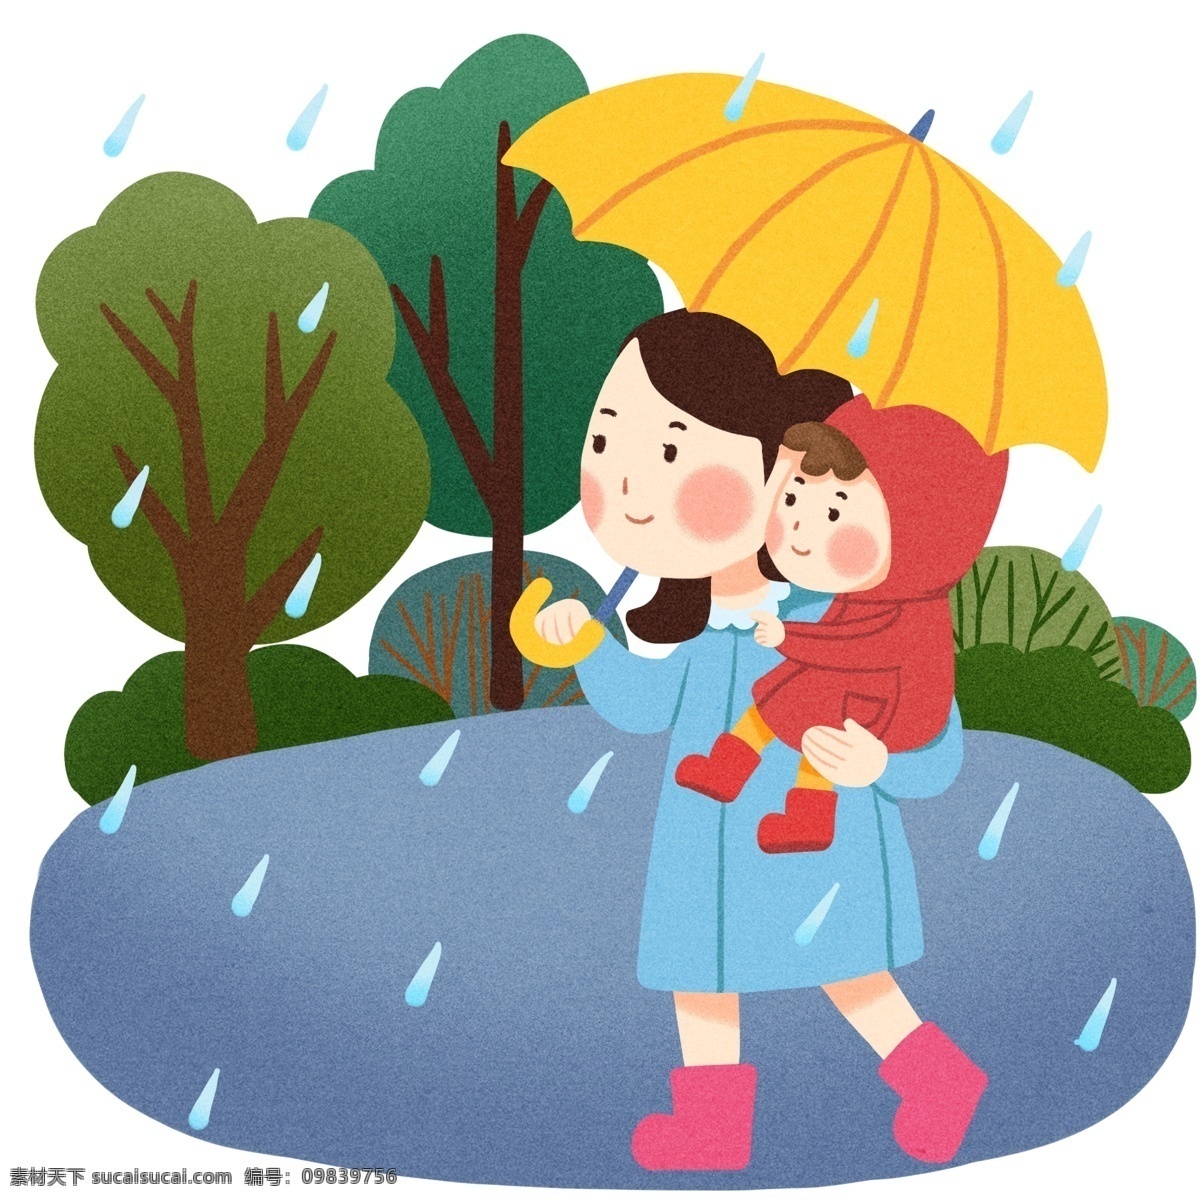 下雨 抱 小孩 插画 手绘 黄色的雨伞 漂亮的妈妈 可爱的小孩 红色的衣服 绿色的树木 植物装饰 母婴插画